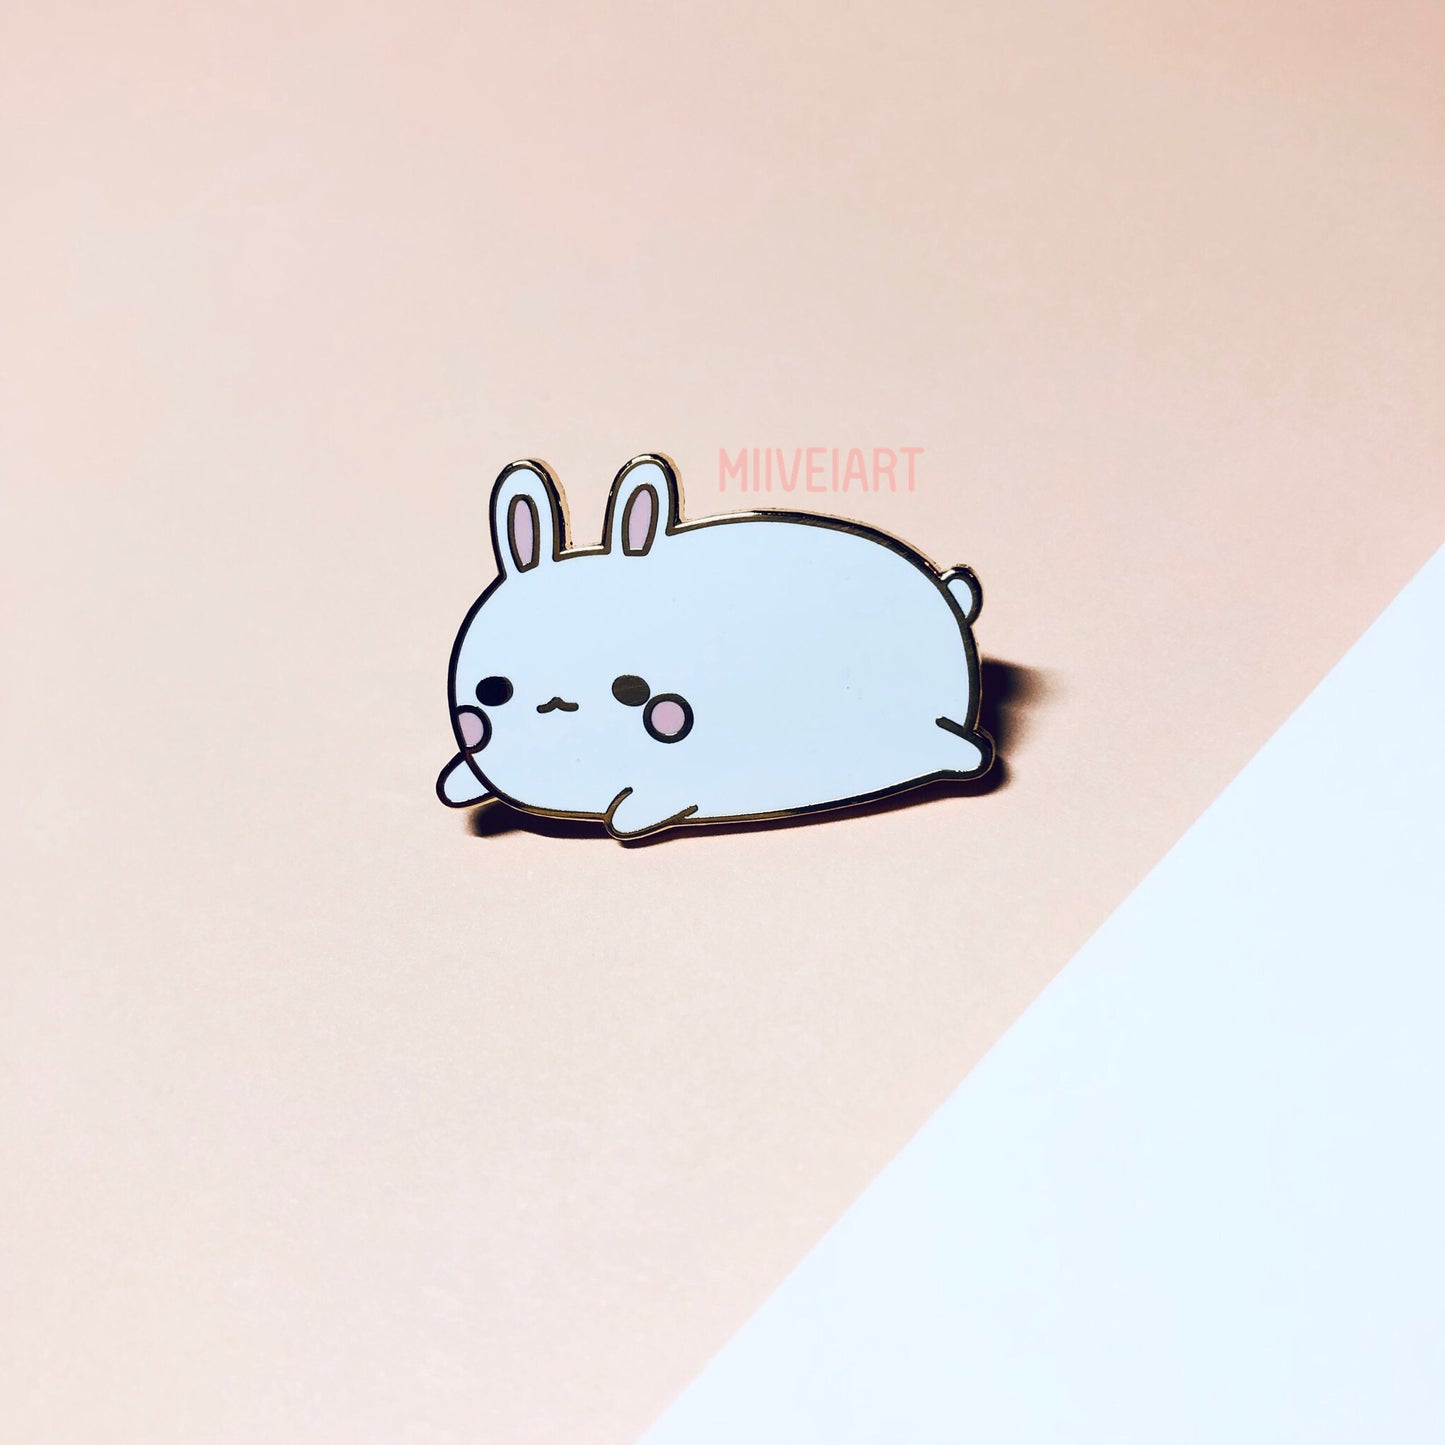 Lazy Bunny Enamel Pin 1.25"